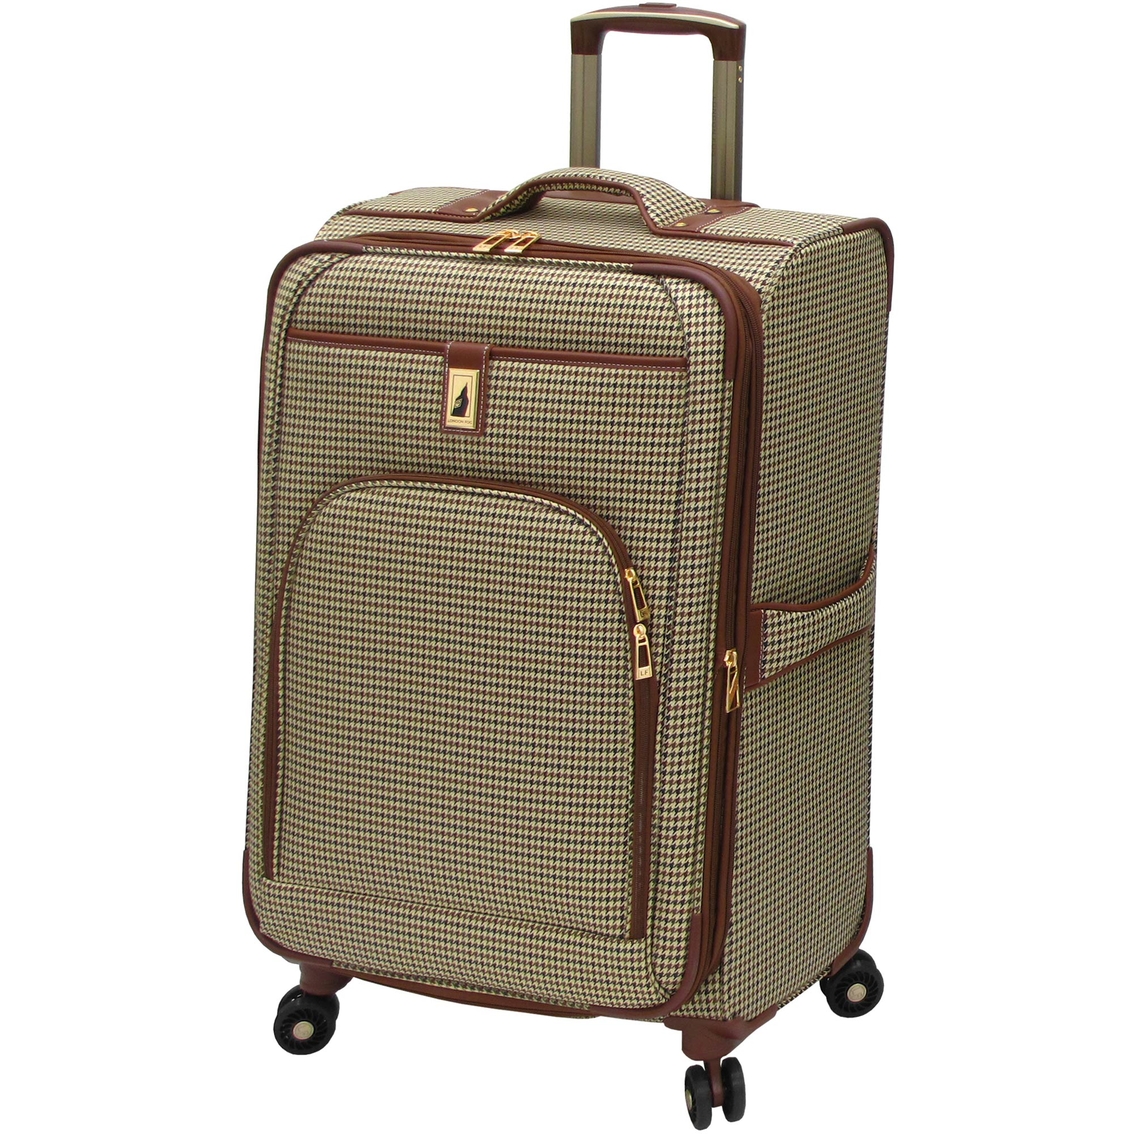 London Fog Cambridge 8 Wheel Expandable Suitcase | Luggage | Clothing ...